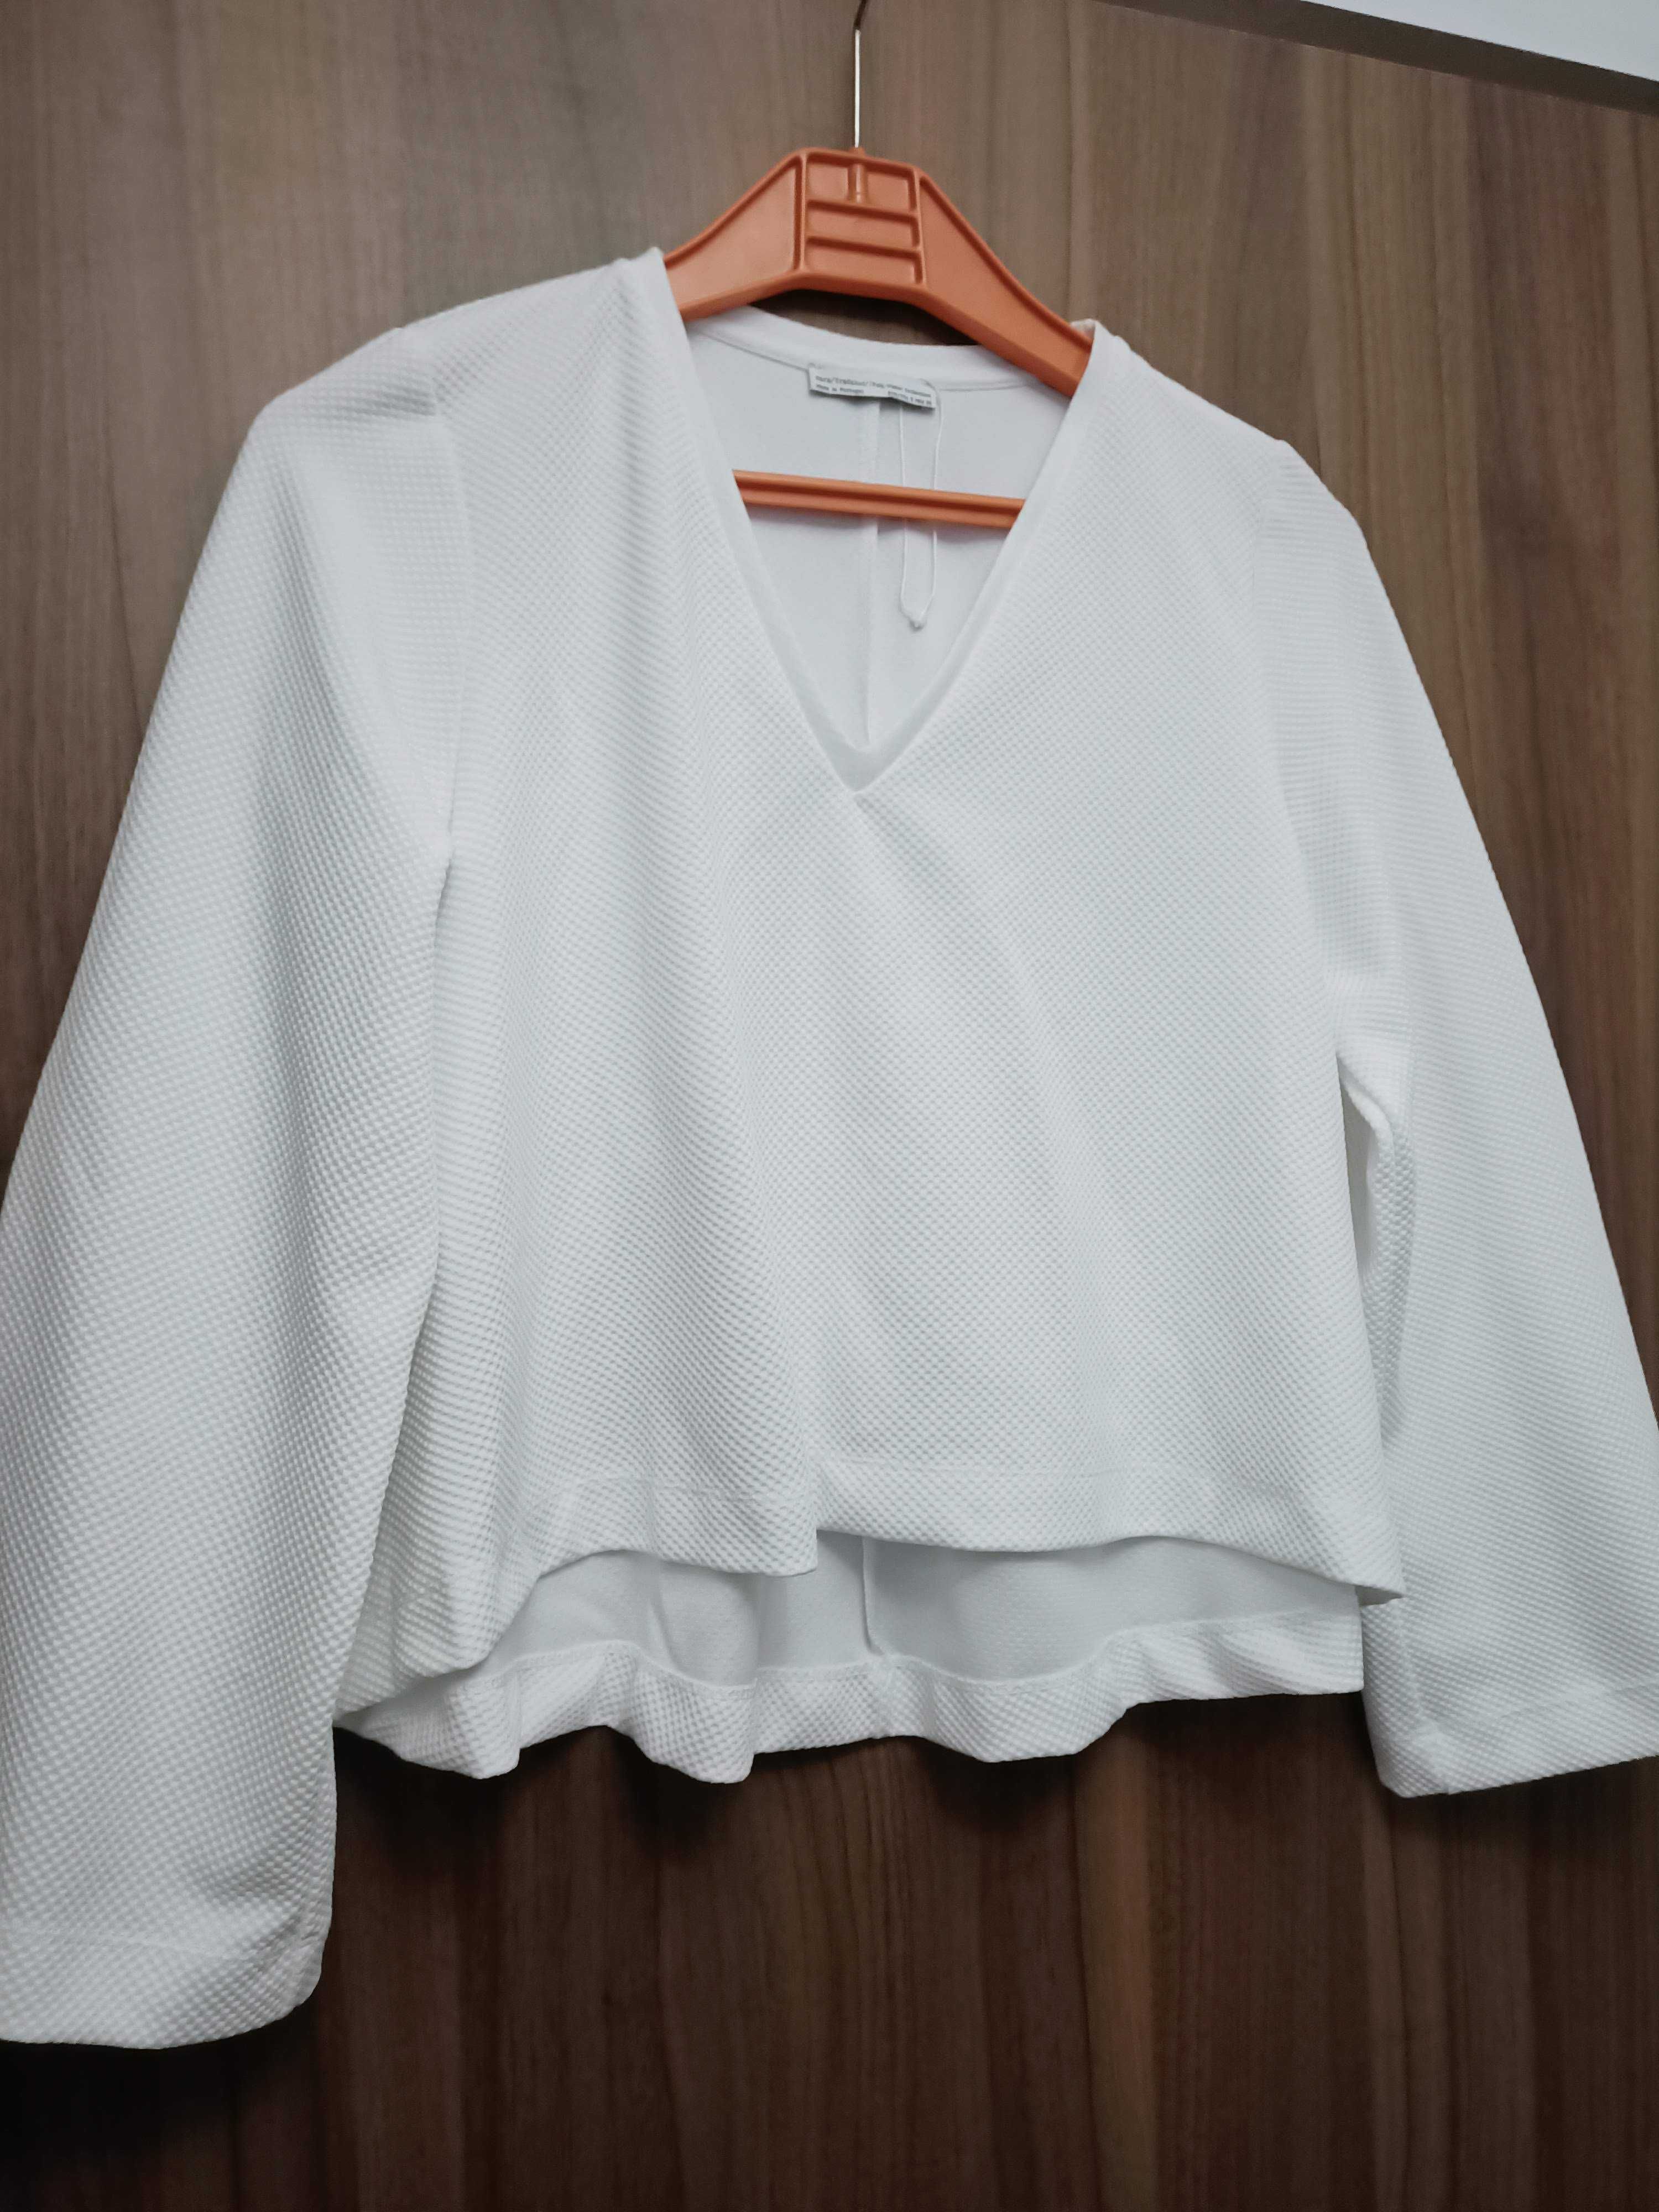 Biała bluzka Zara. Rozmiar S M 36 38